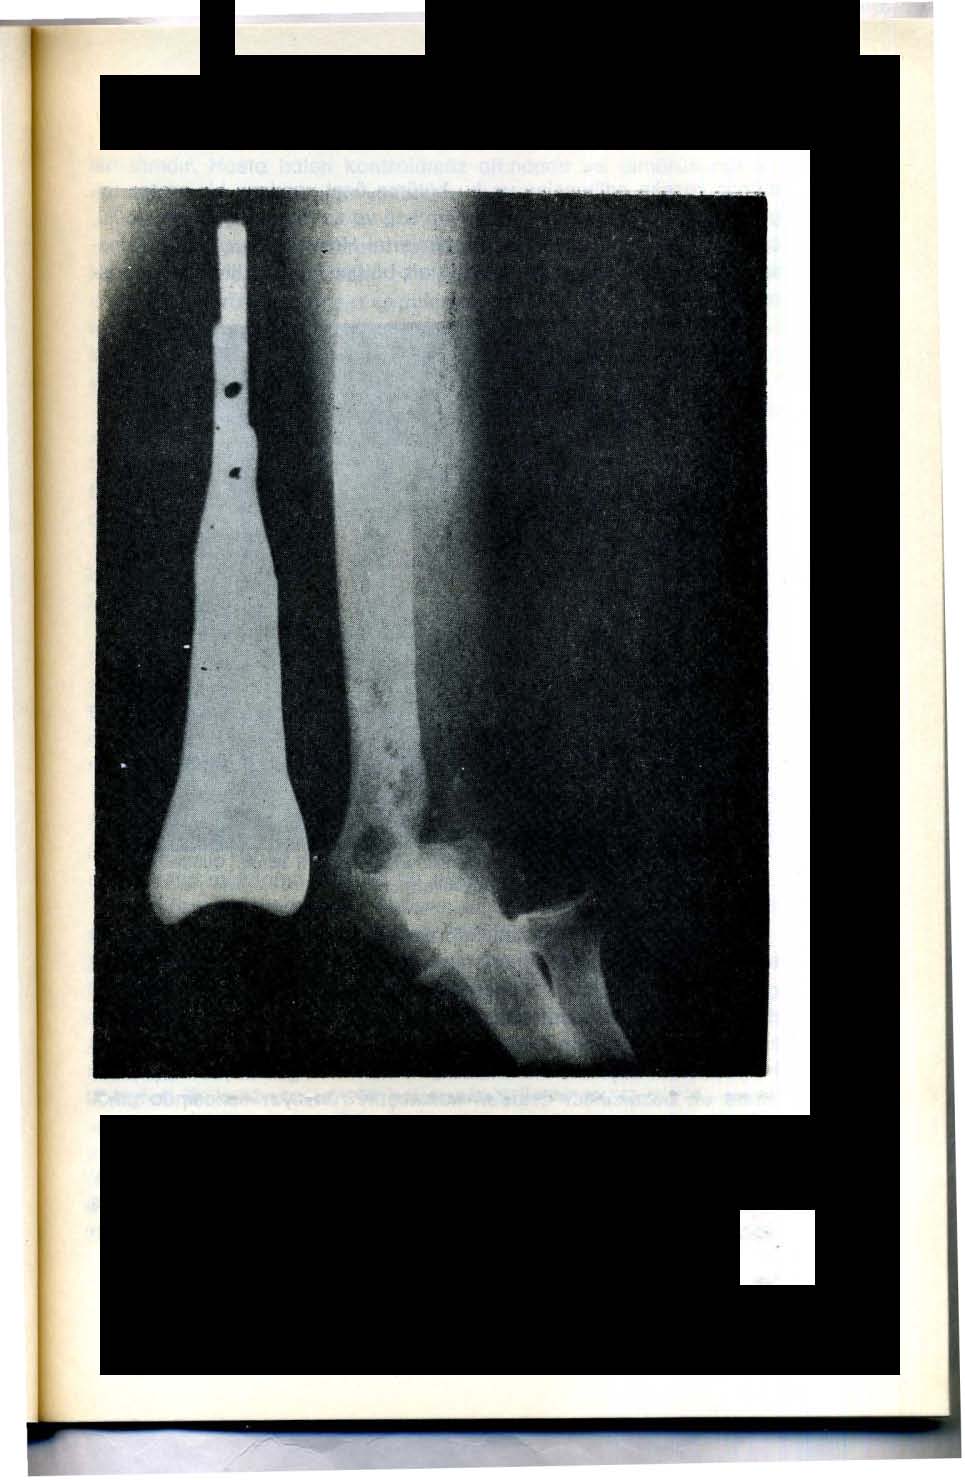 Resim 5 - Sol humerus dış kandili rezeke edilmiş, Cubitis valgus gelişmiş, ayrıca humerus ic kandilinde tümör yeniden oluşmuştur( Humerus yanında, uygulanacak özel protezin görünümü (Radyolojik